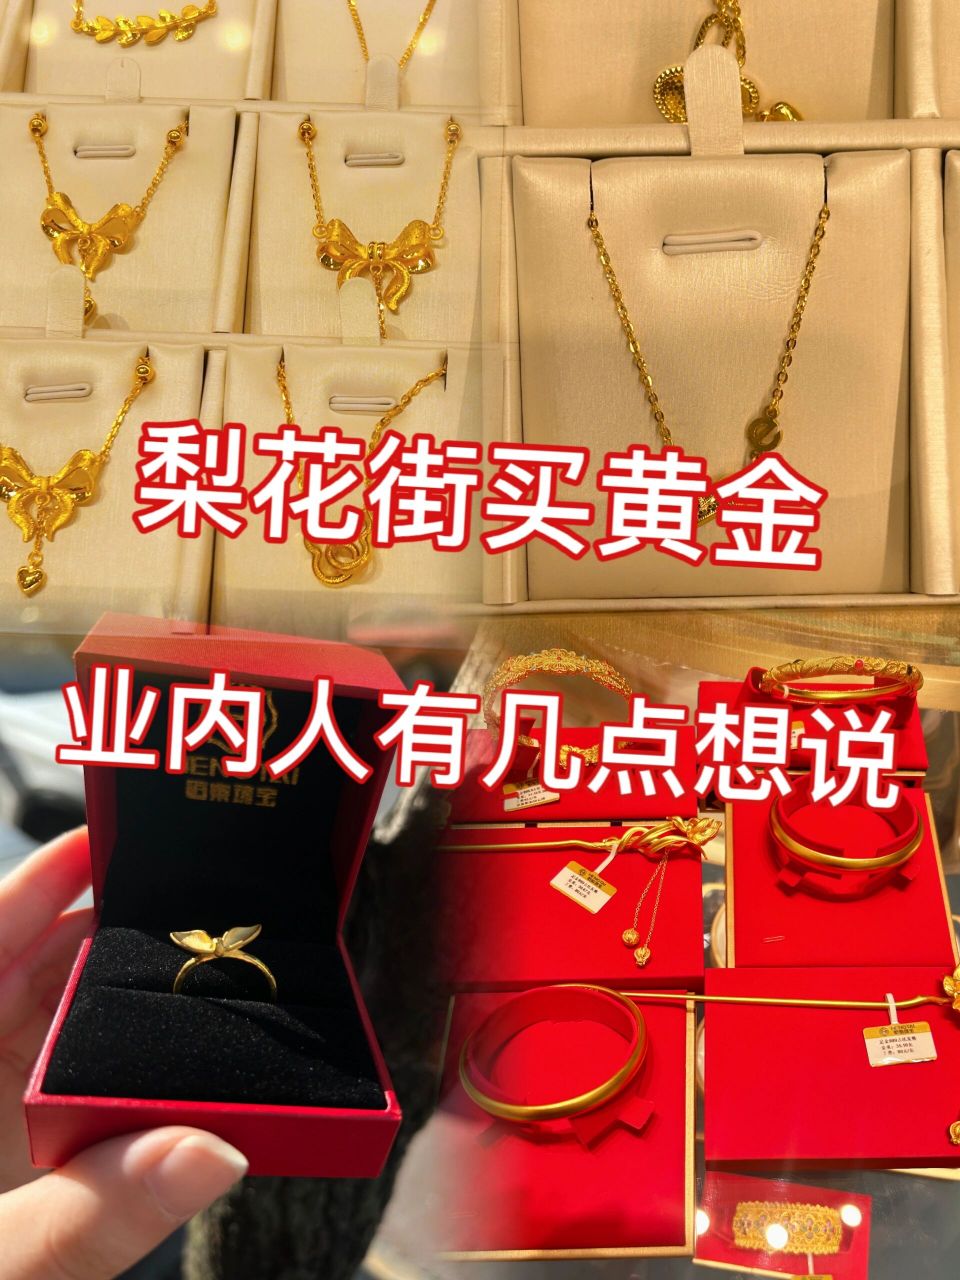 业内人有几点想说 成都梨花街是整个西南地区最大的黄金珠宝批发市场